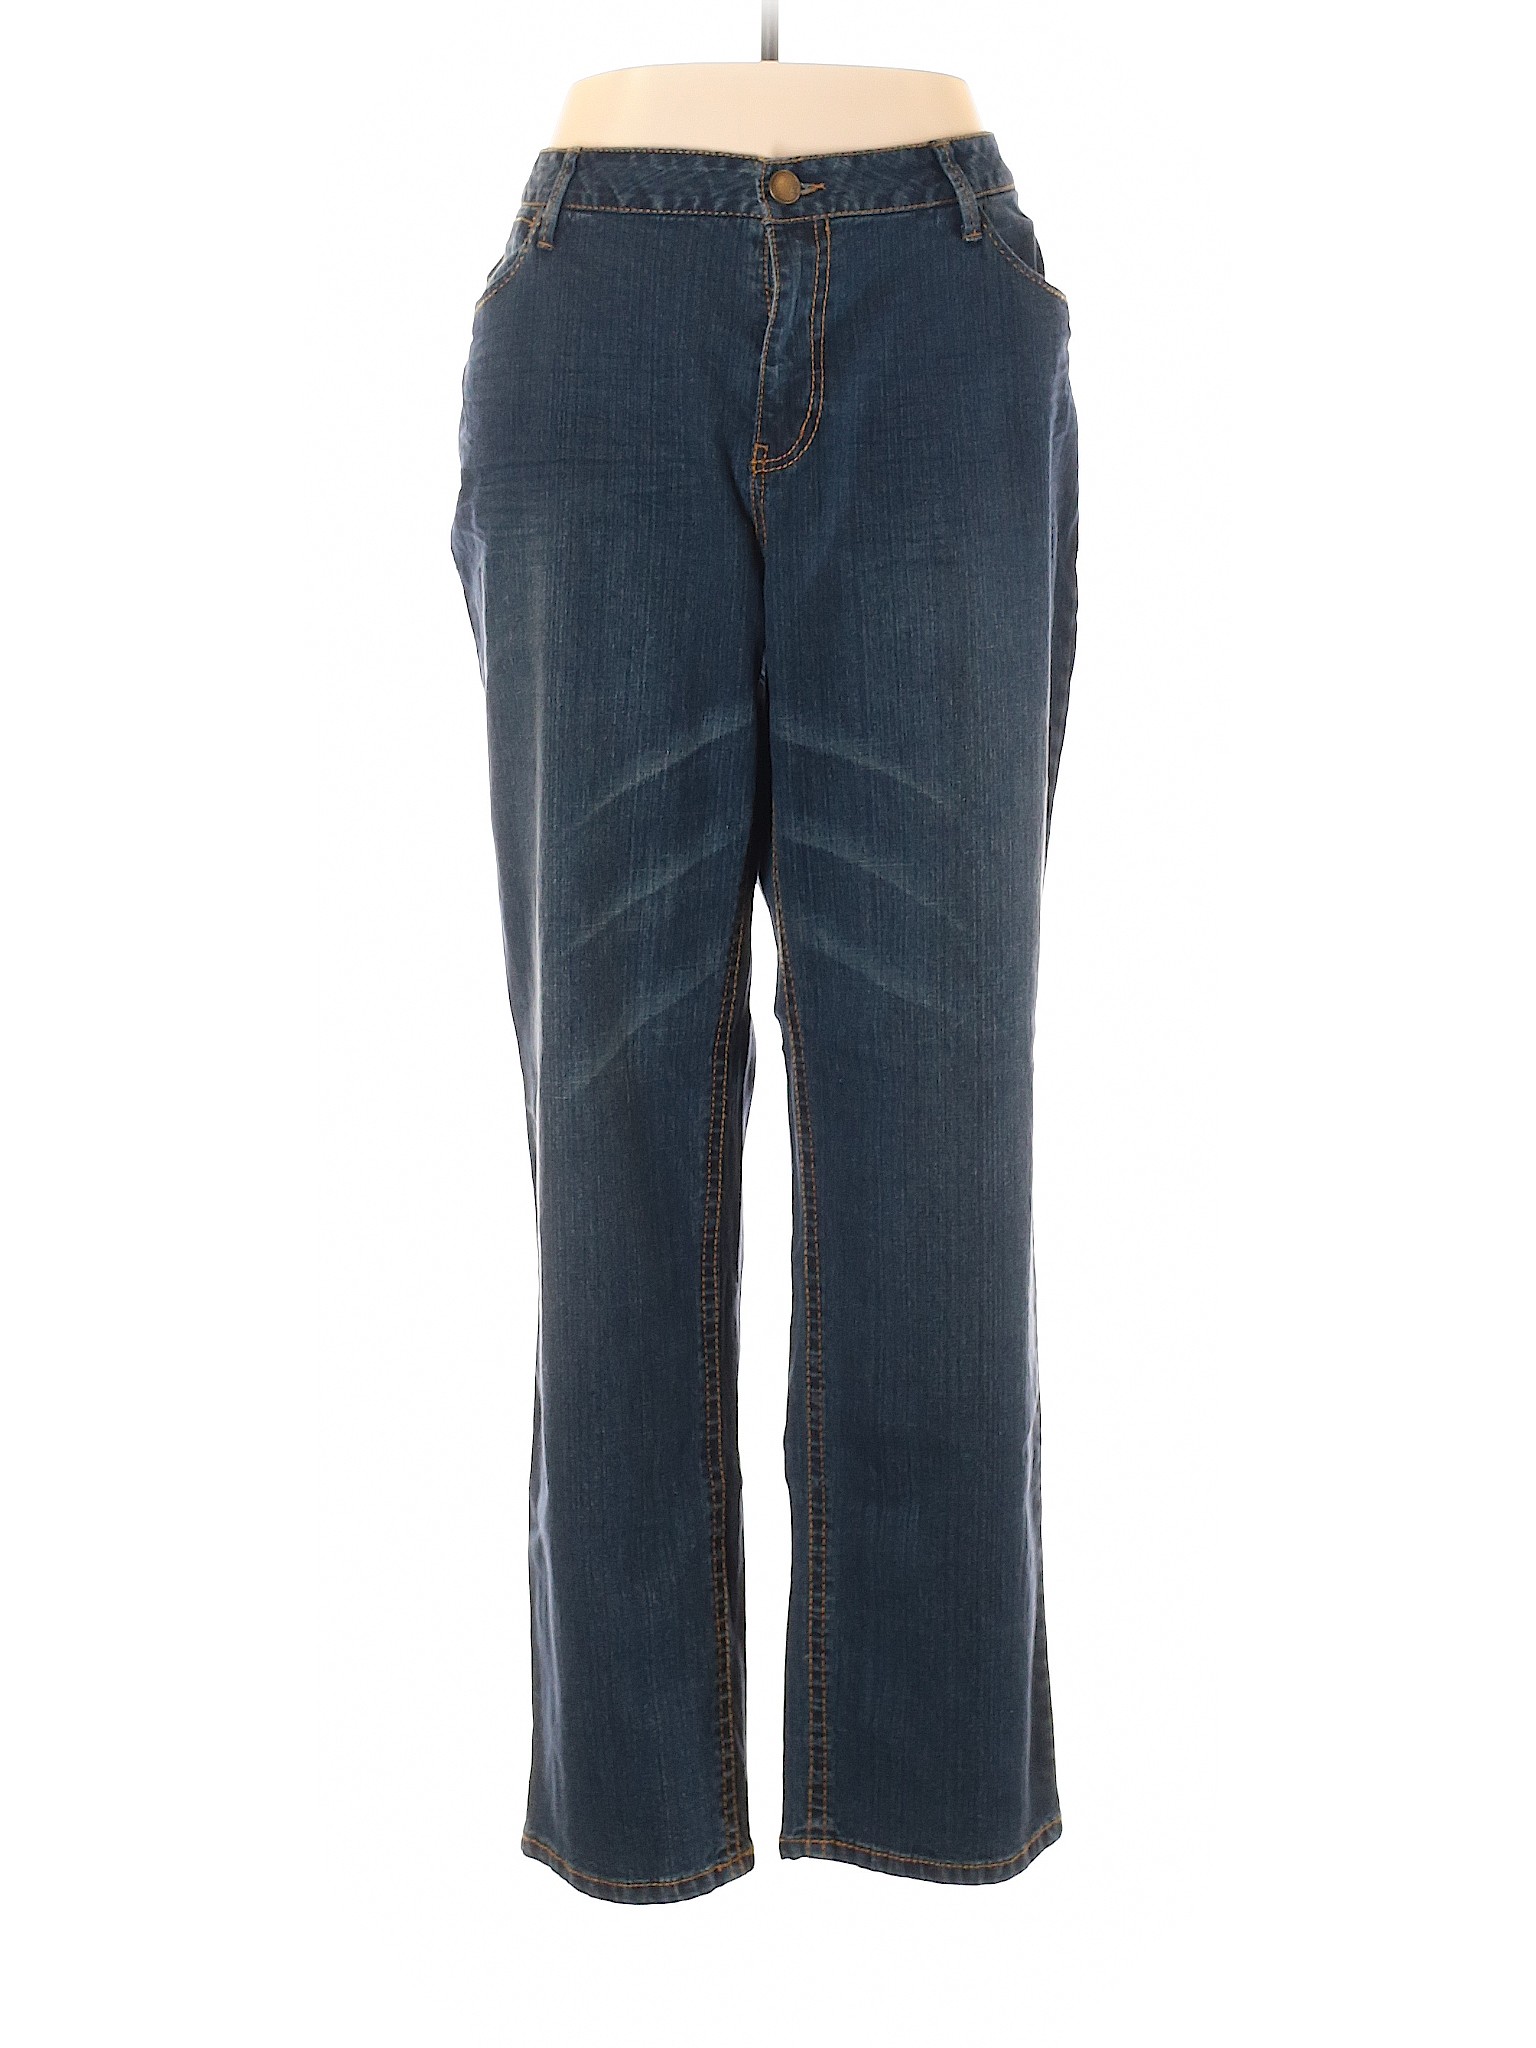 NWT Avenue Women Blue Jeans 20 Plus | eBay